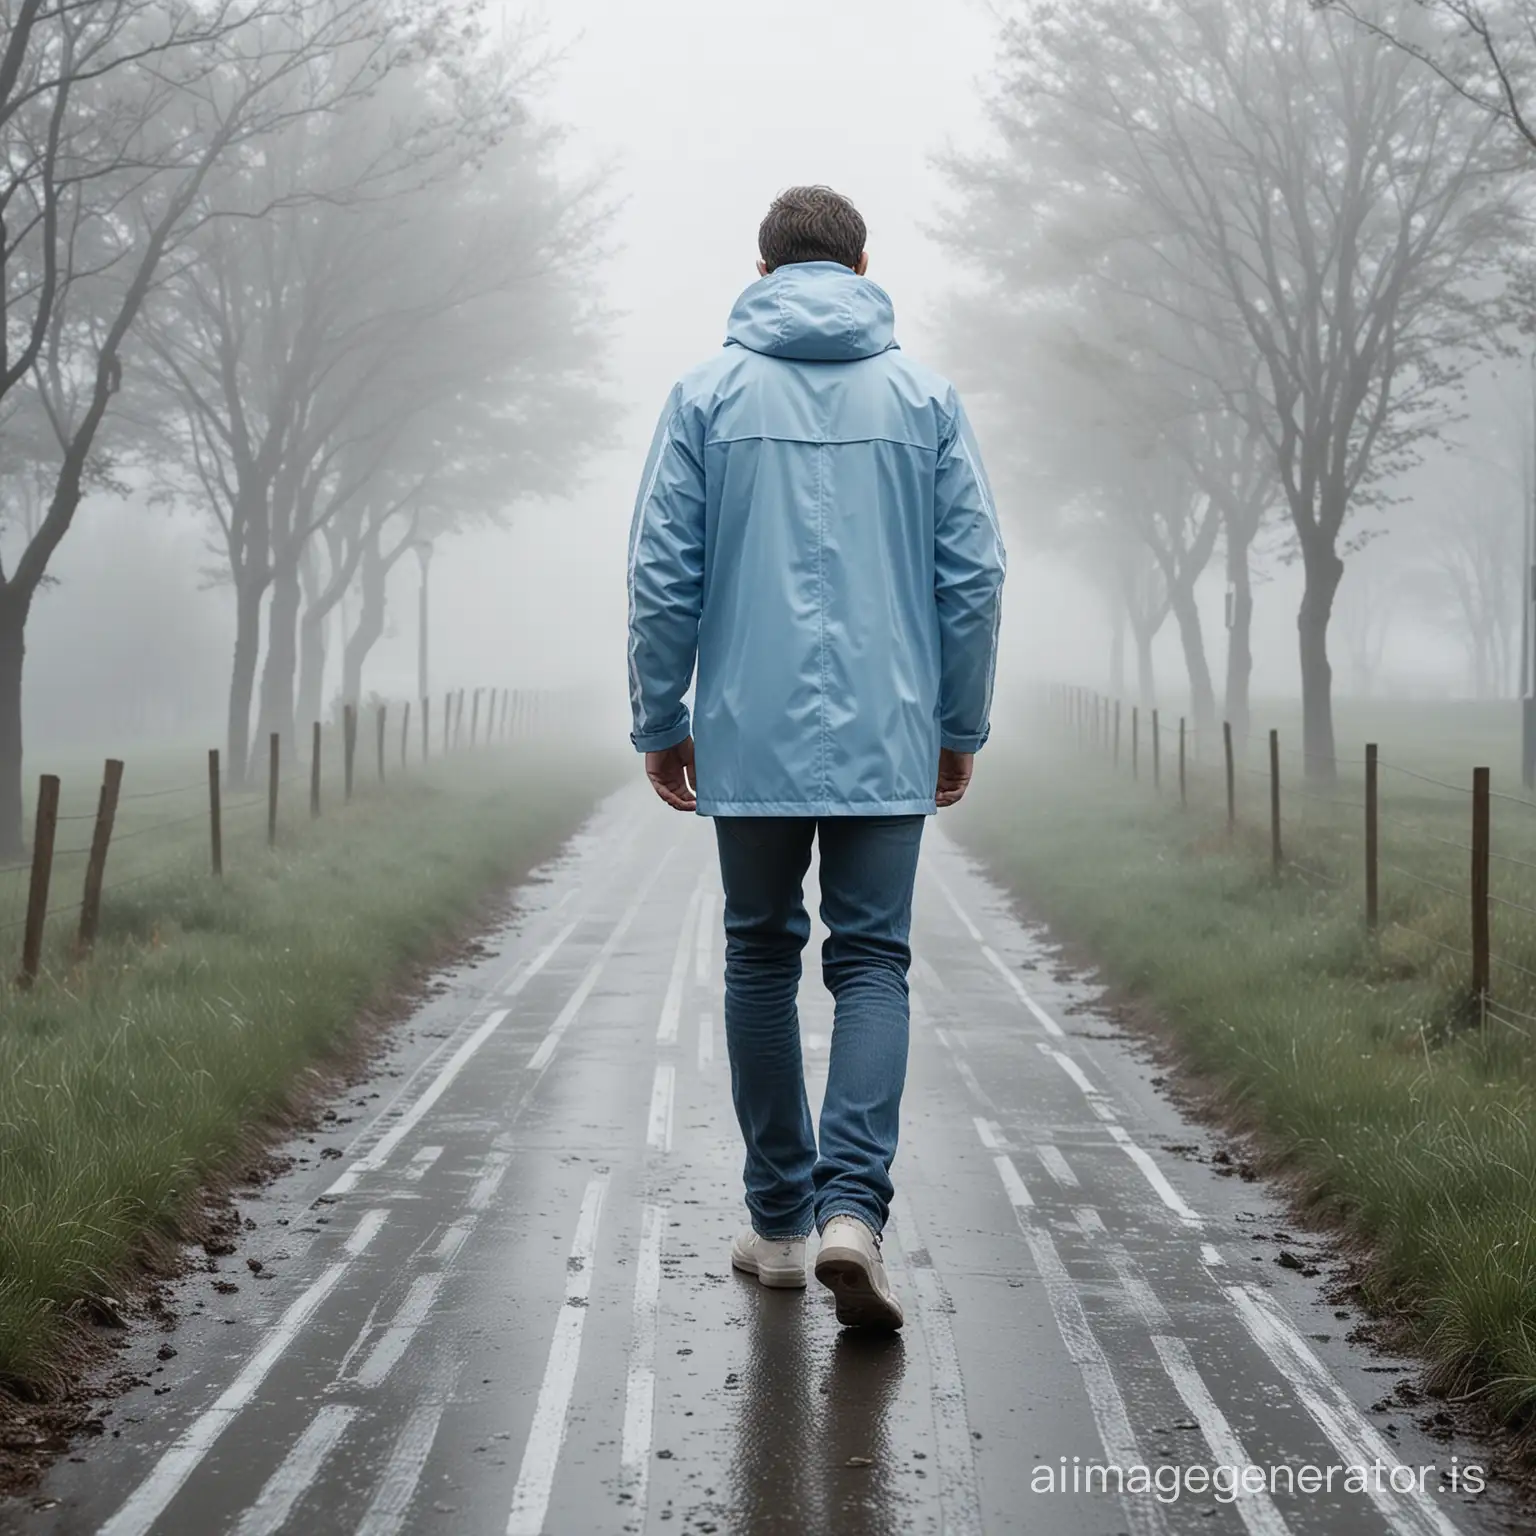 Man-Walking-in-Foggy-Weather-Wearing-Light-Blue-Striped-Rain-Jacket